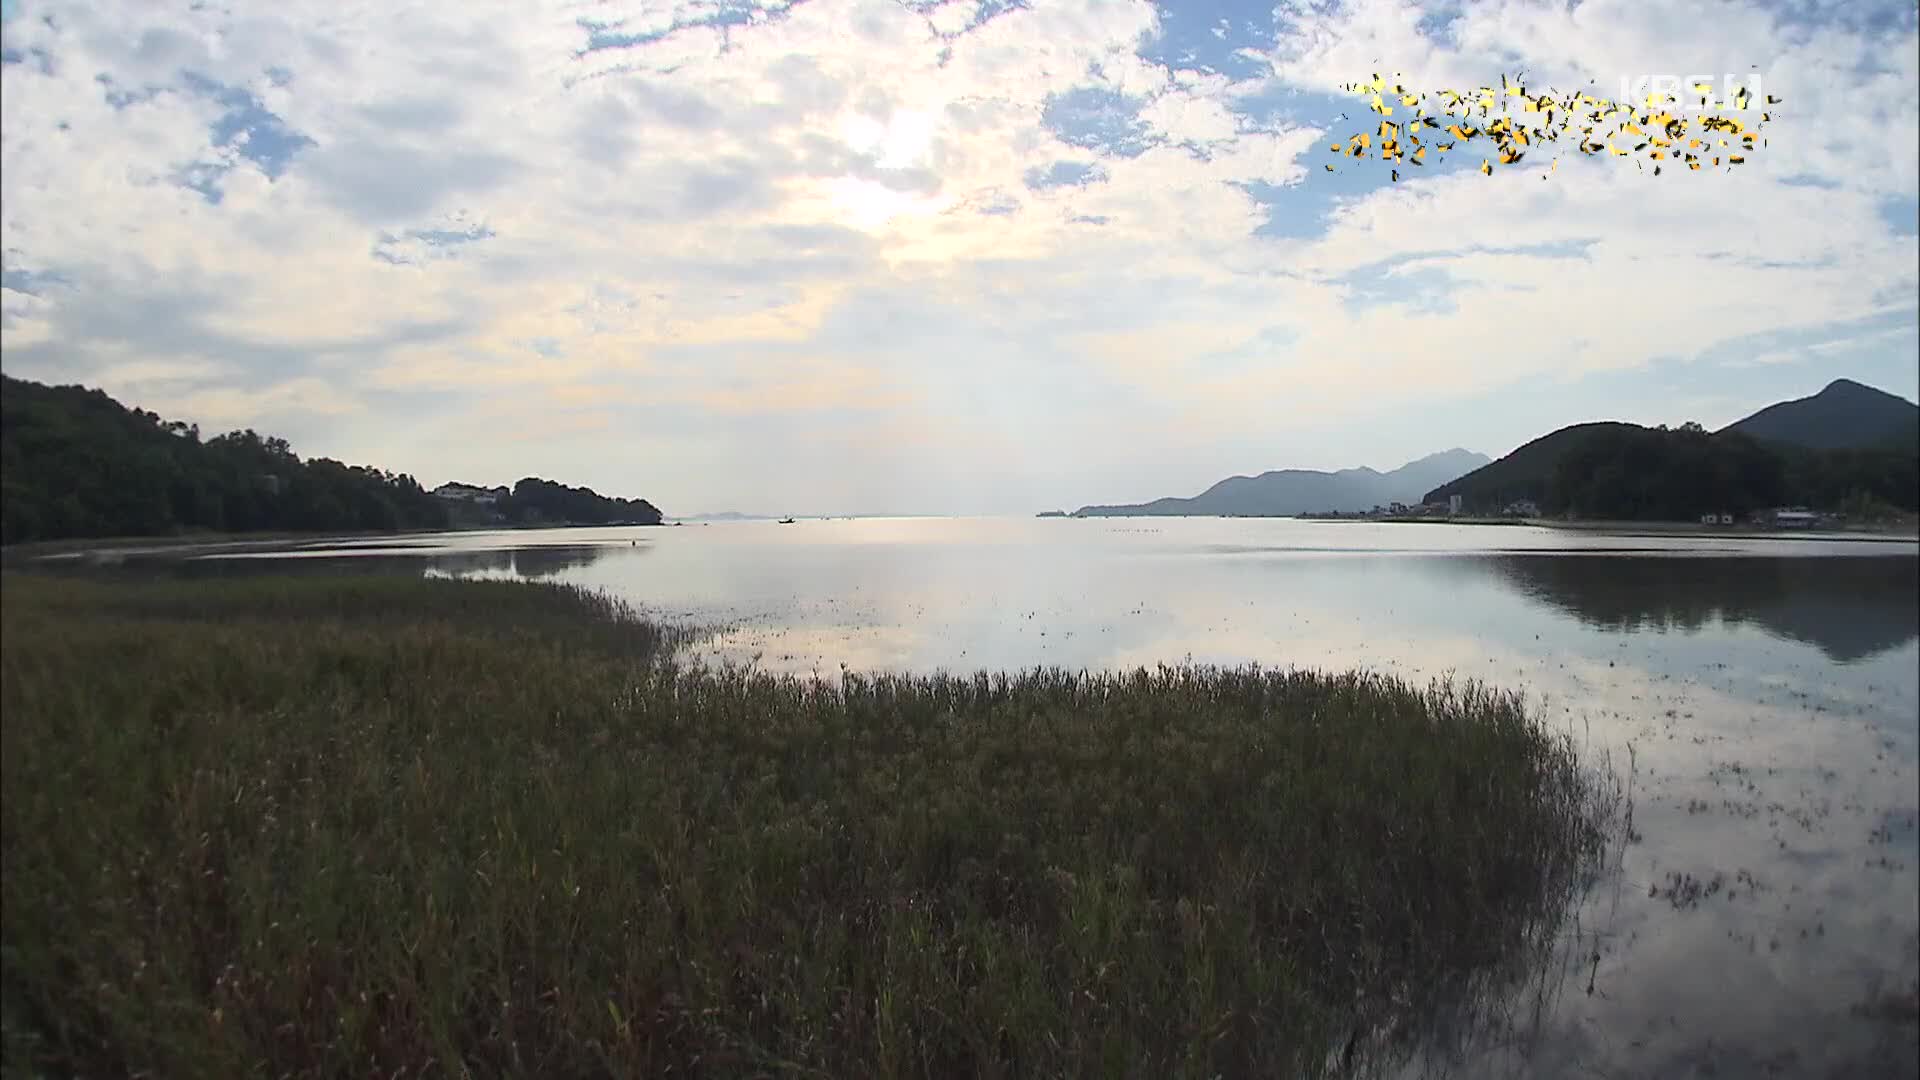 [뉴스광장 영상] 갯벌 위의 술래잡기